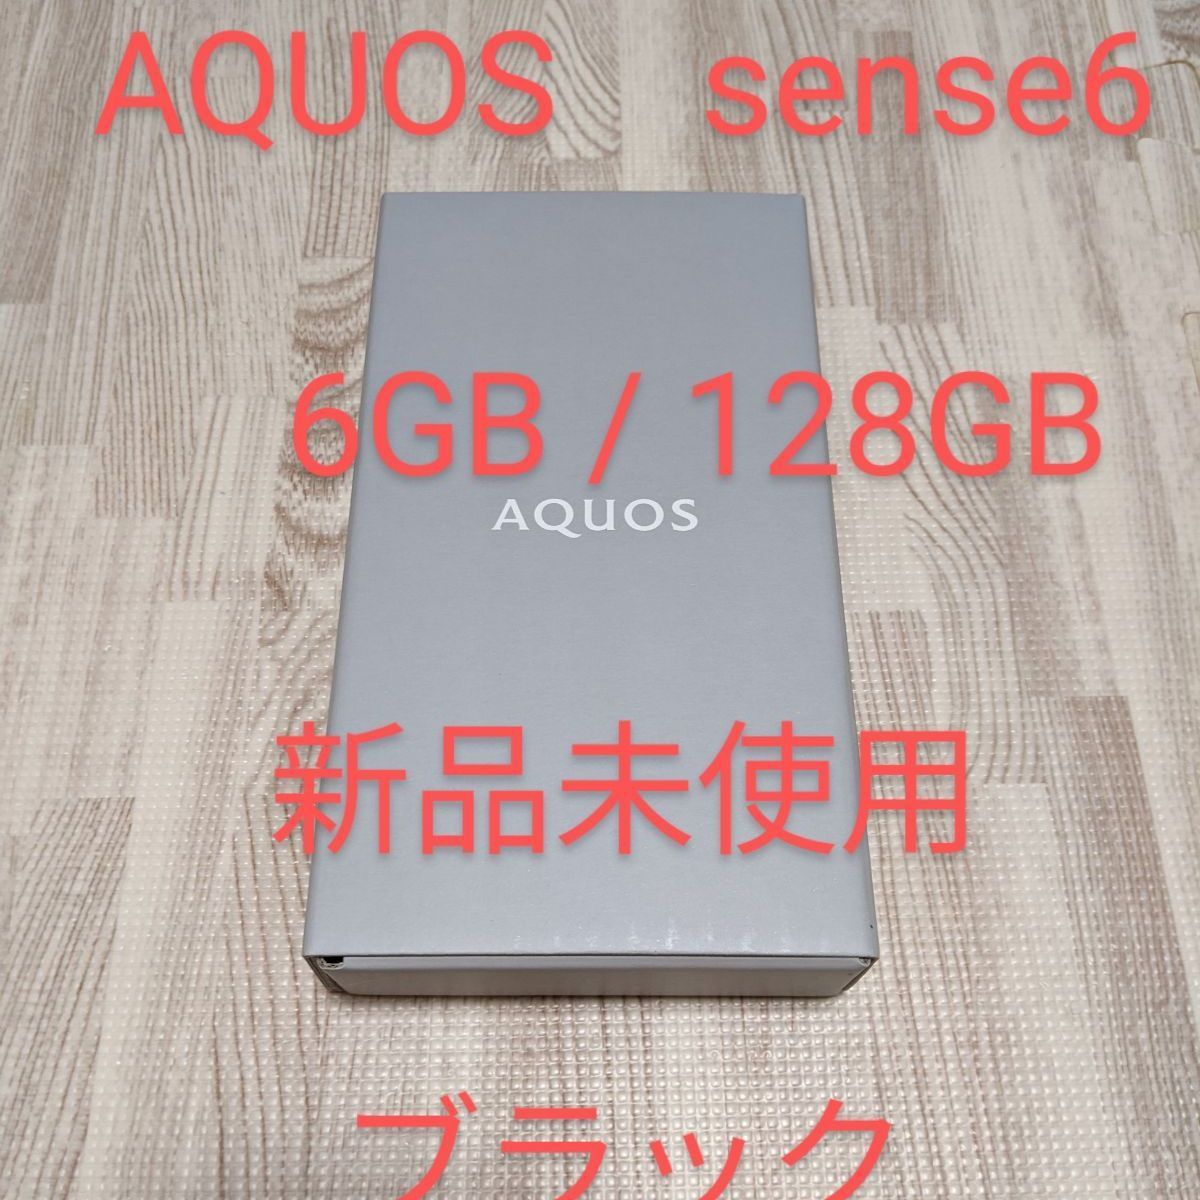 新品】AQUOS sense6 6GB/128GB ブラック - スマートフォン本体